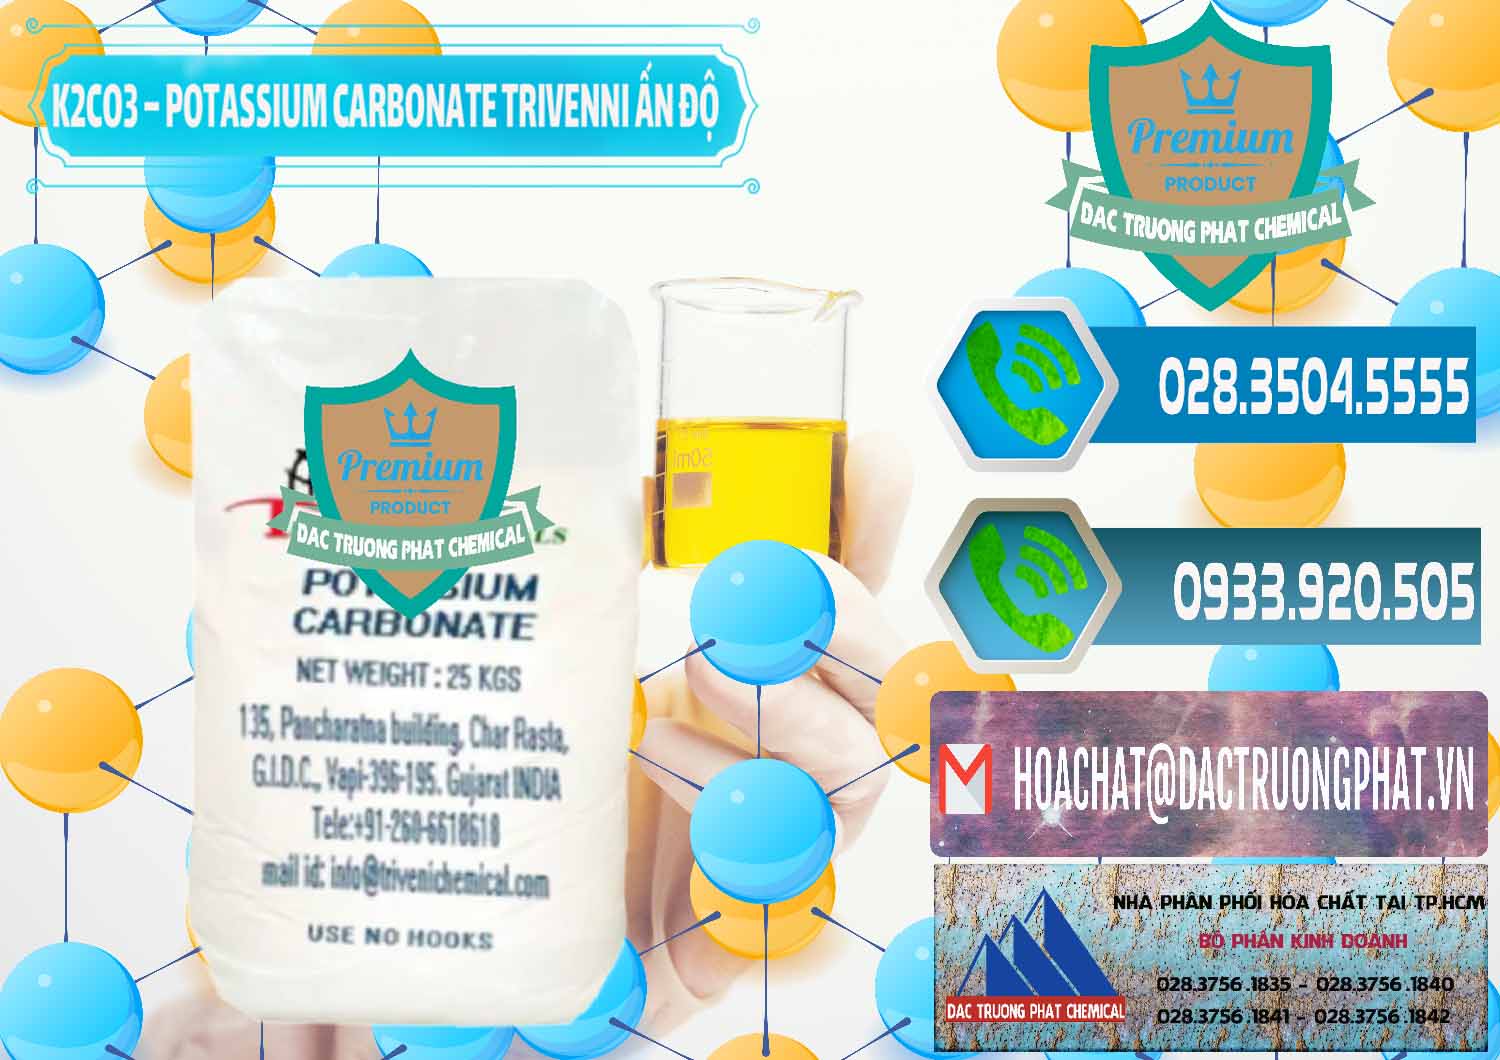 Nơi chuyên bán - cung cấp K2Co3 – Potassium Carbonate Trivenni Ấn Độ India - 0473 - Cty cung cấp & phân phối hóa chất tại TP.HCM - congtyhoachat.net